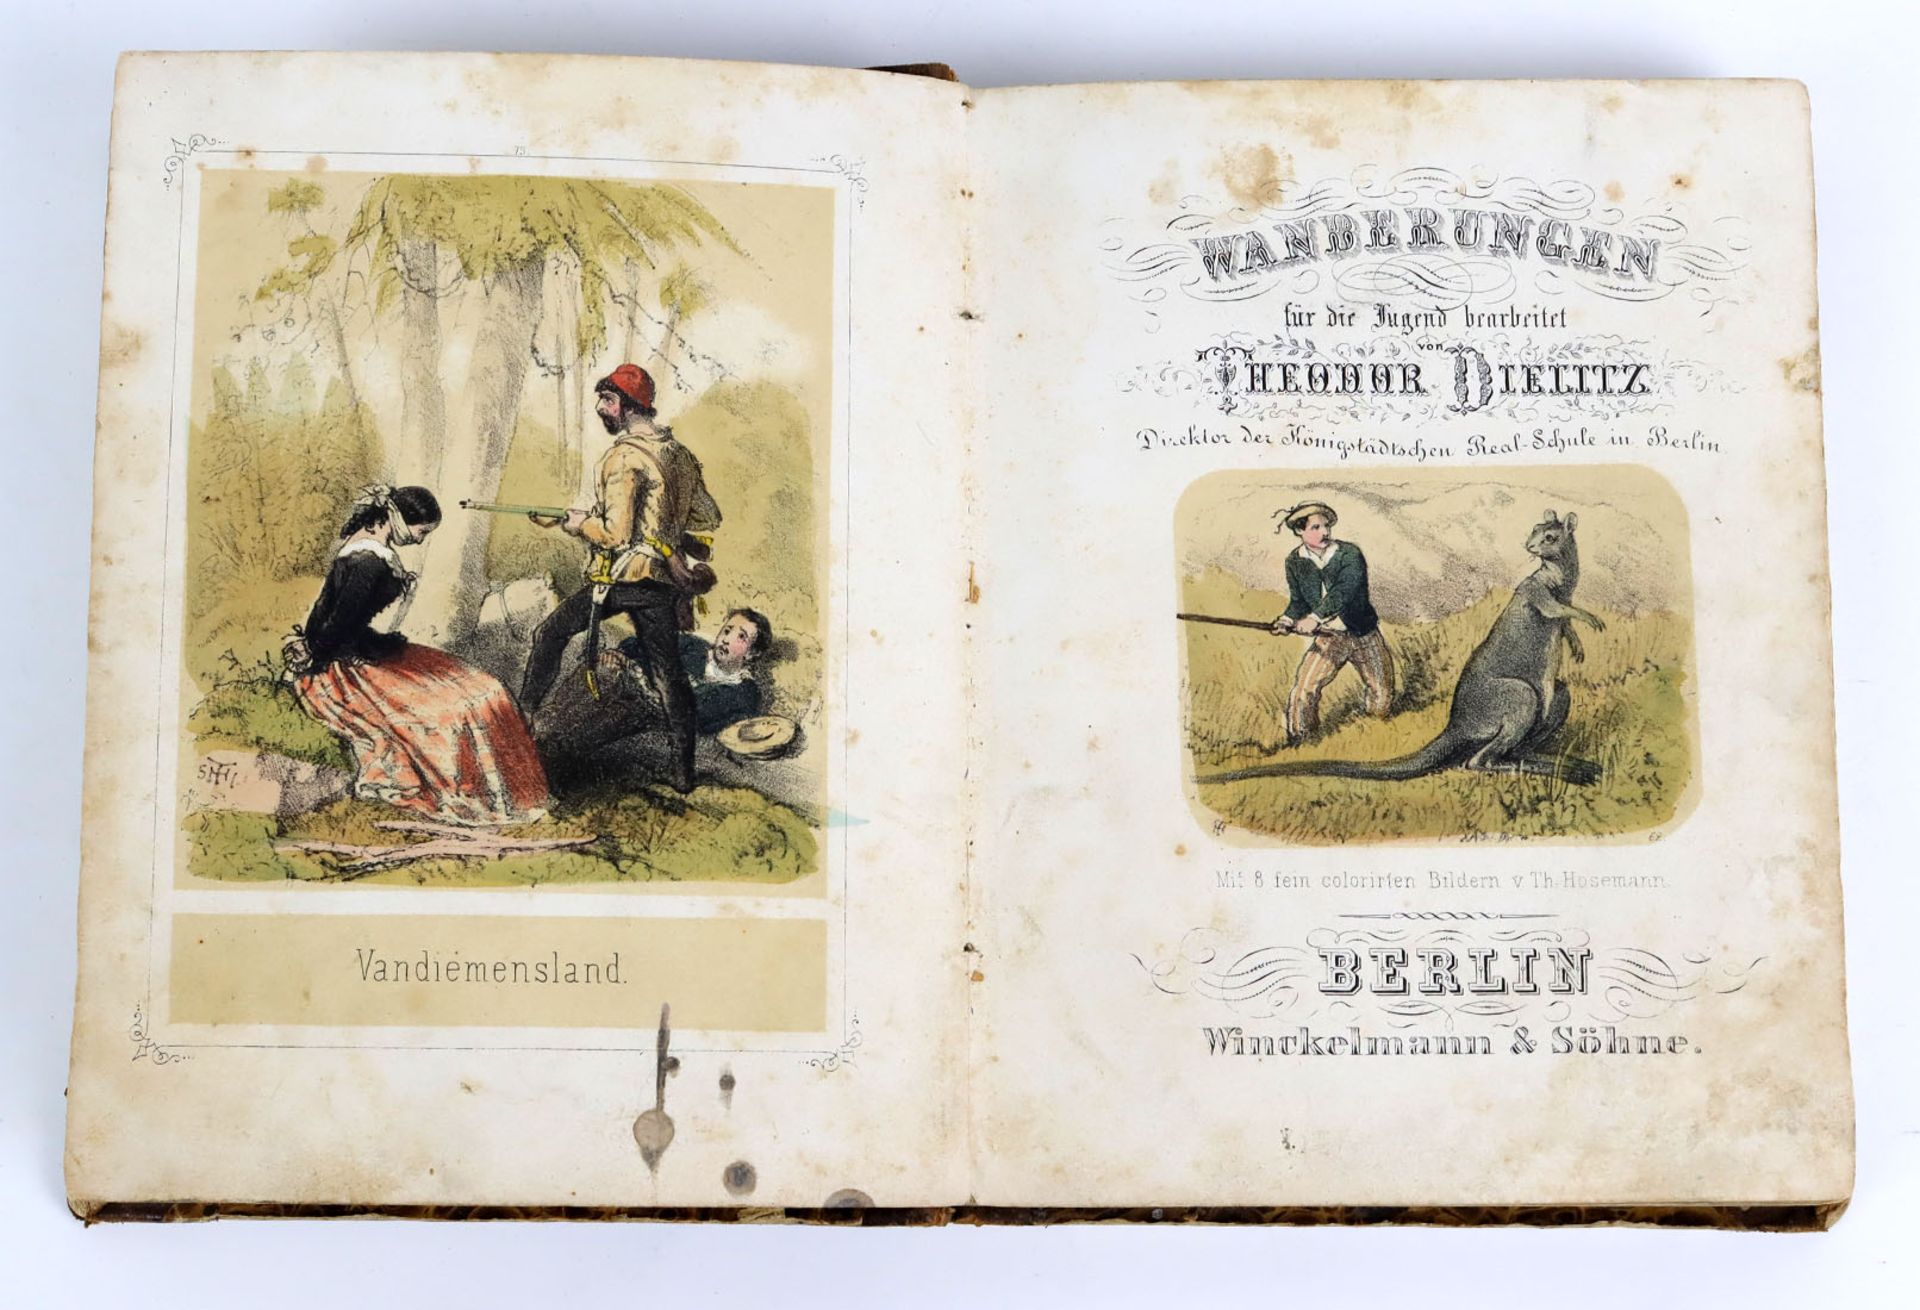 Wanderungen für die JugendTheodor Dielitz, m. 8 fein colorirten Bildern v. Th. Hosema